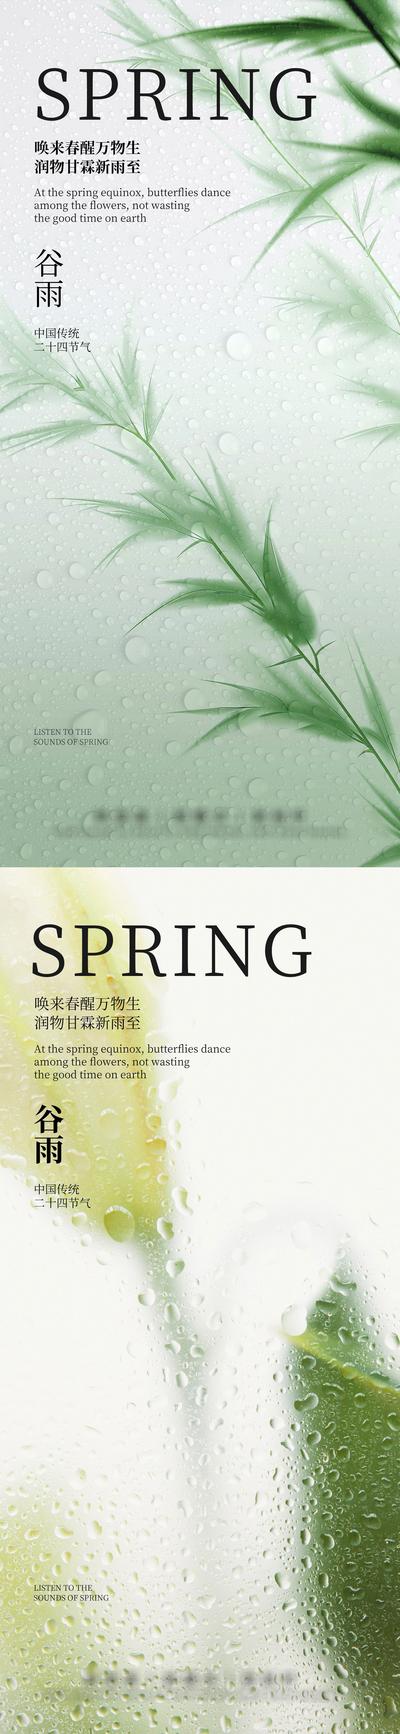 南门网 广告 海报 房地产 谷雨 二十四节气 立春 雨水 惊蛰 春分 清明 春天 风景 唯美